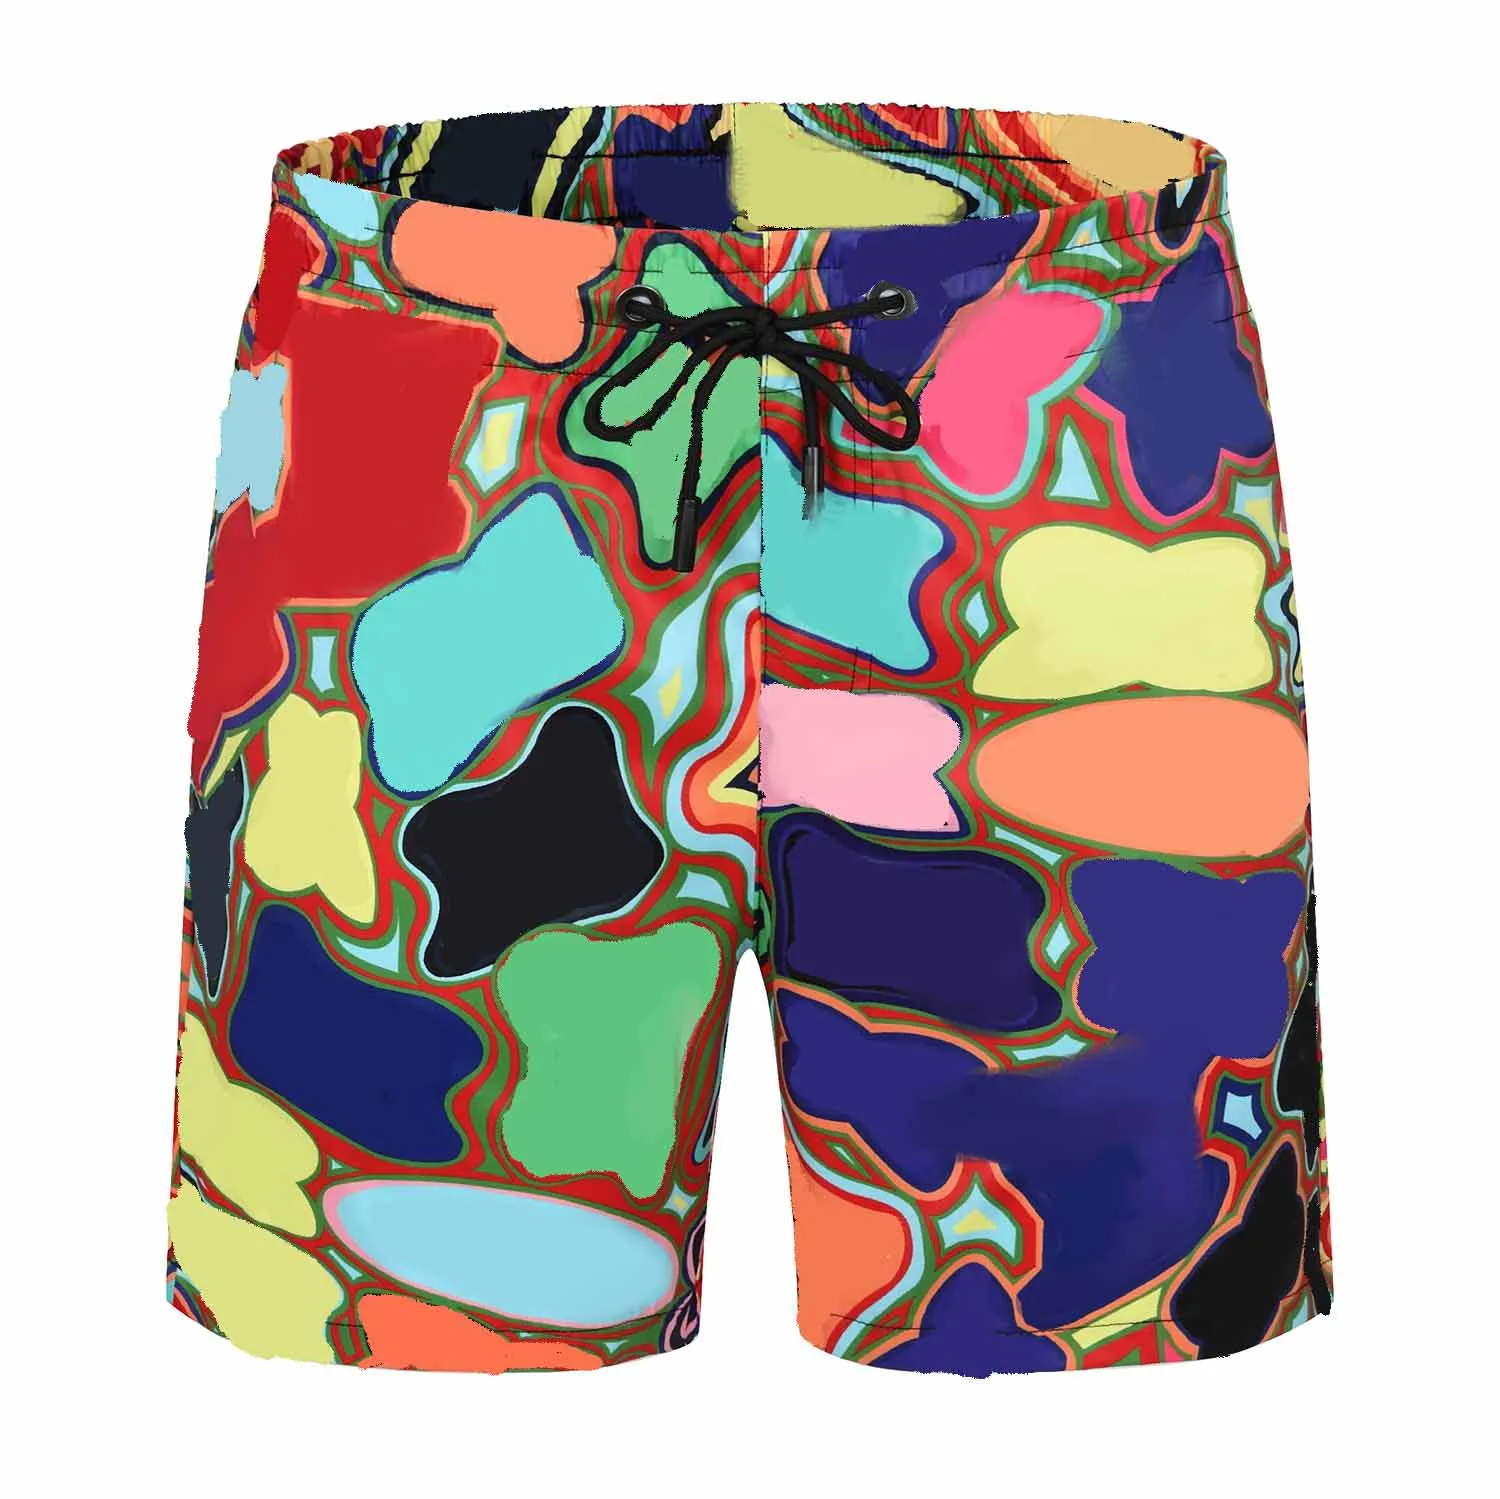 21 Sommer Männer Brett Shorts Kontrast Farbbrief Muster Fashion Ins Männer Badebekleidung trendy atmungsaktives Strandschwimm Shorts340a